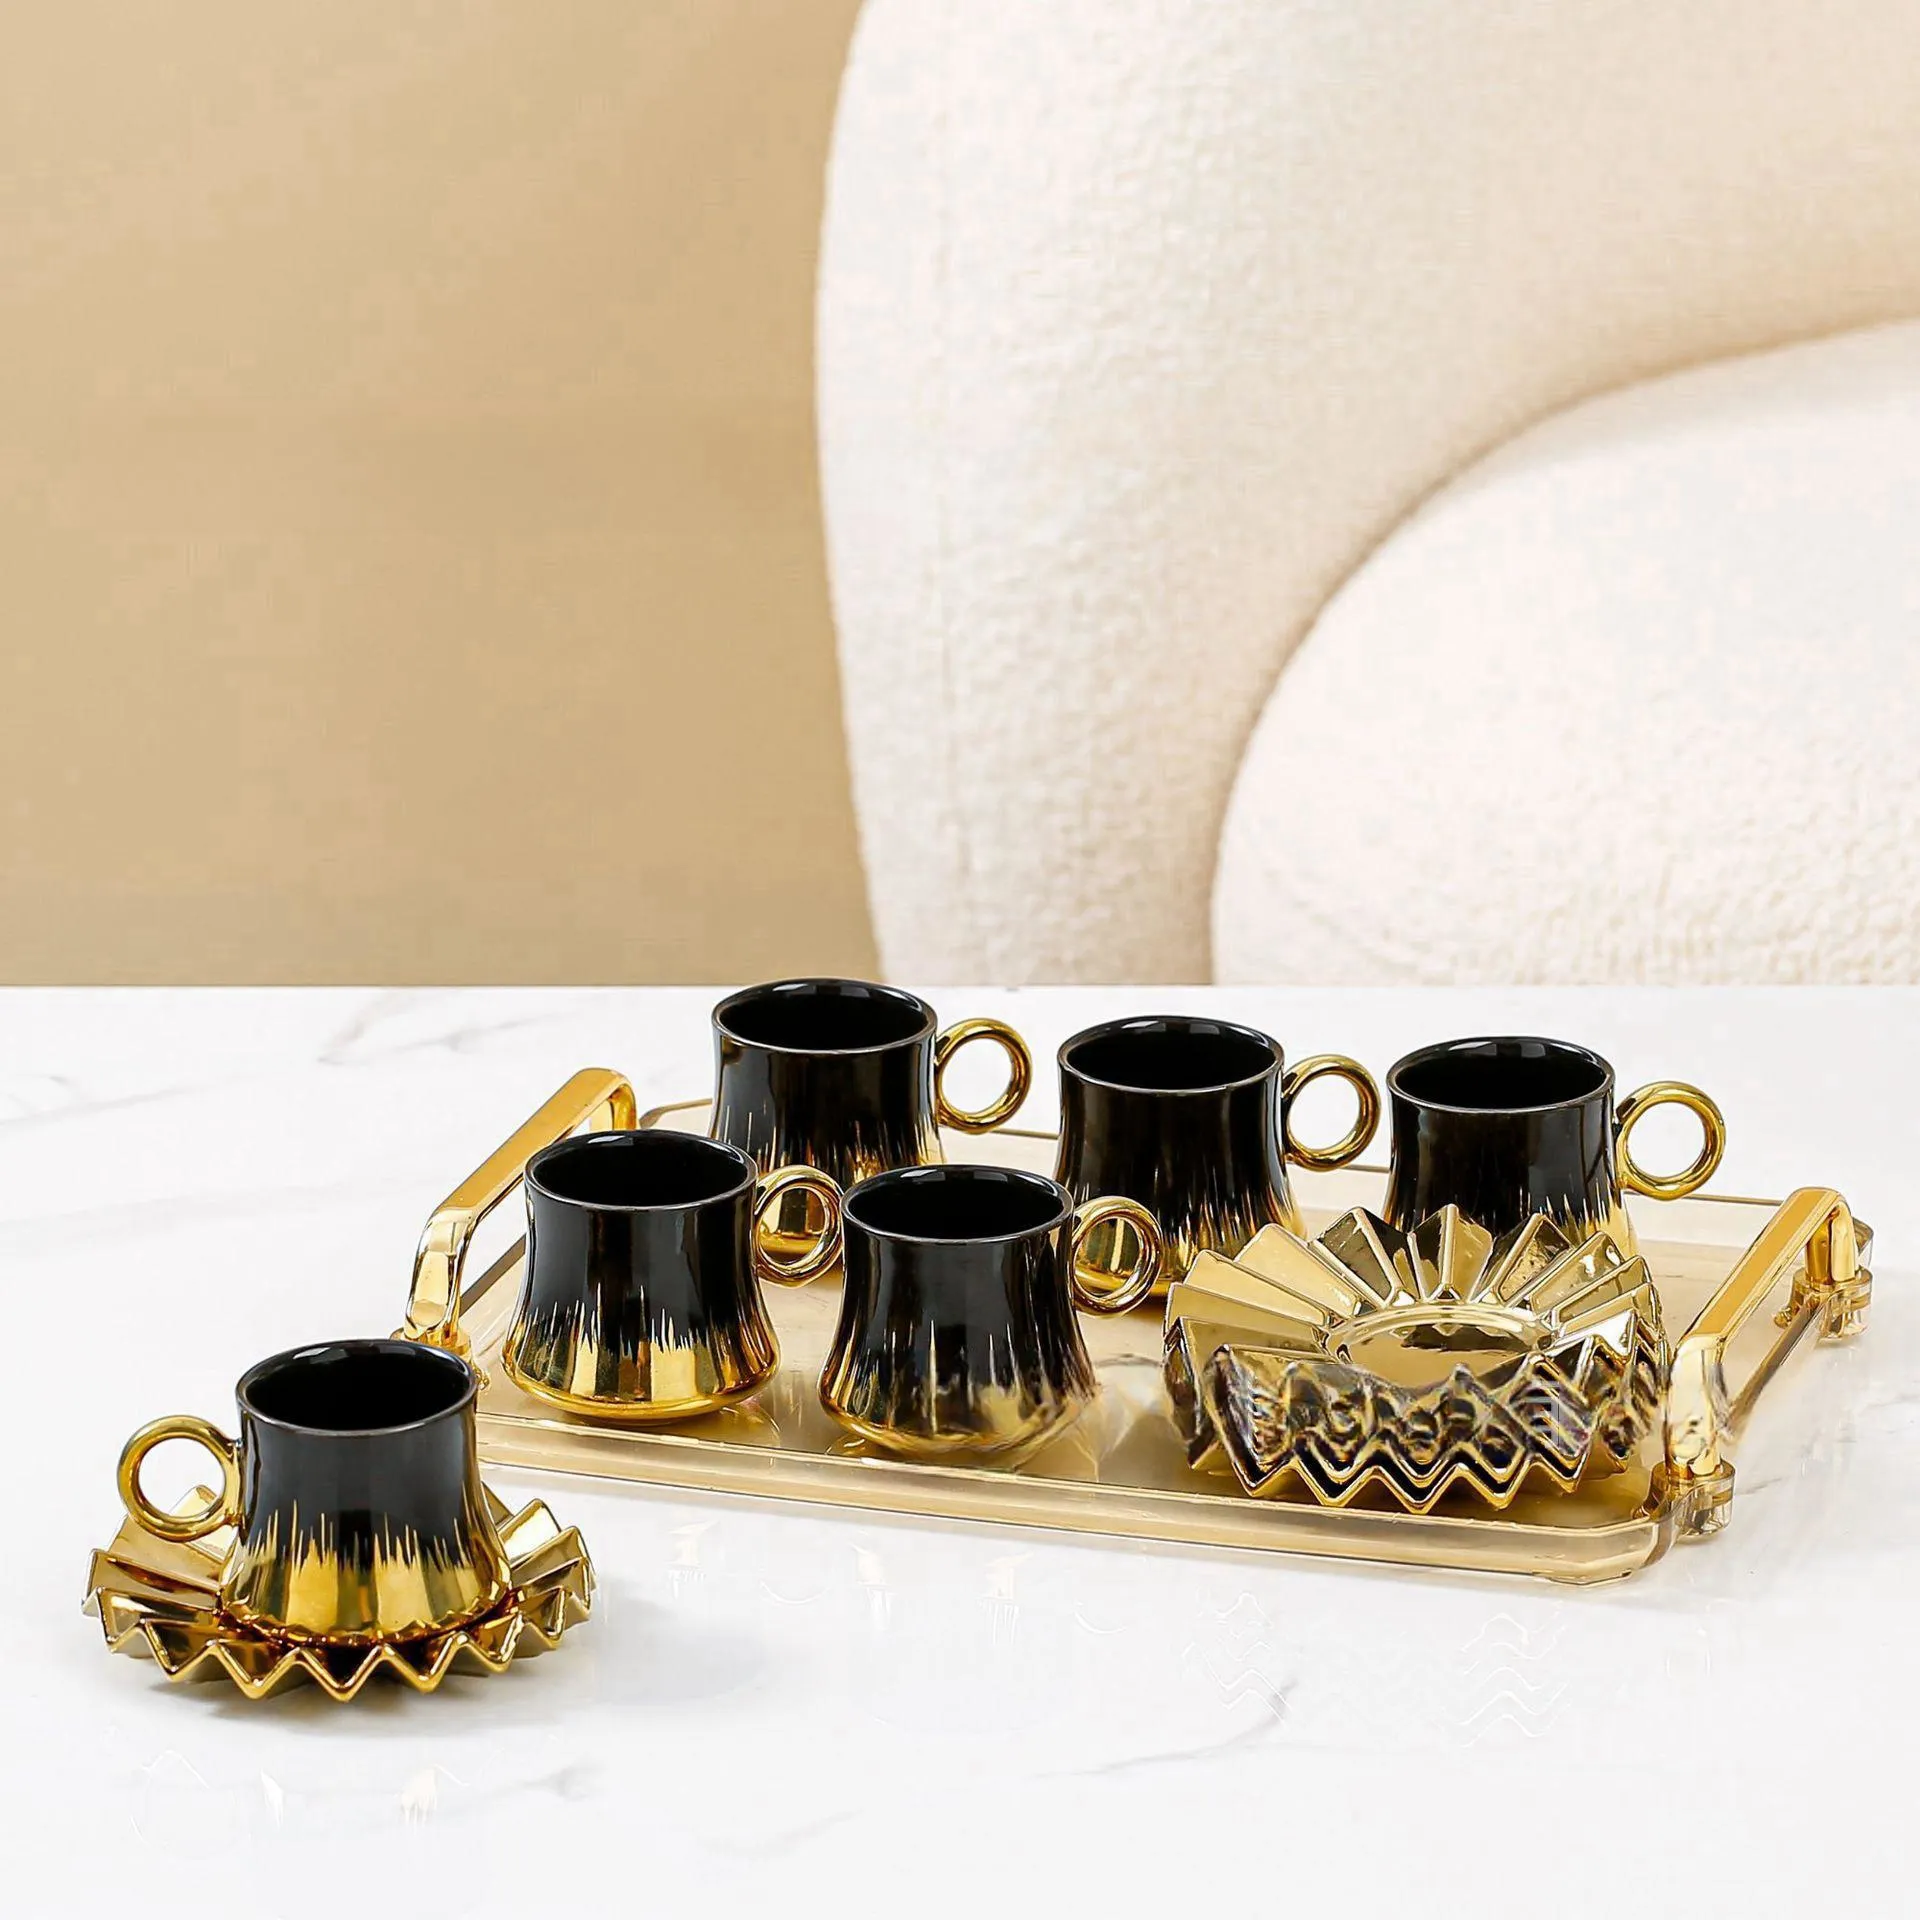 Porselen espresso fincanı set tasarım arapça matcha çayı set çaydanlık 6 adet 90Ml espresso seramik kullanımlık kahve fincanları ile tabaklar Set